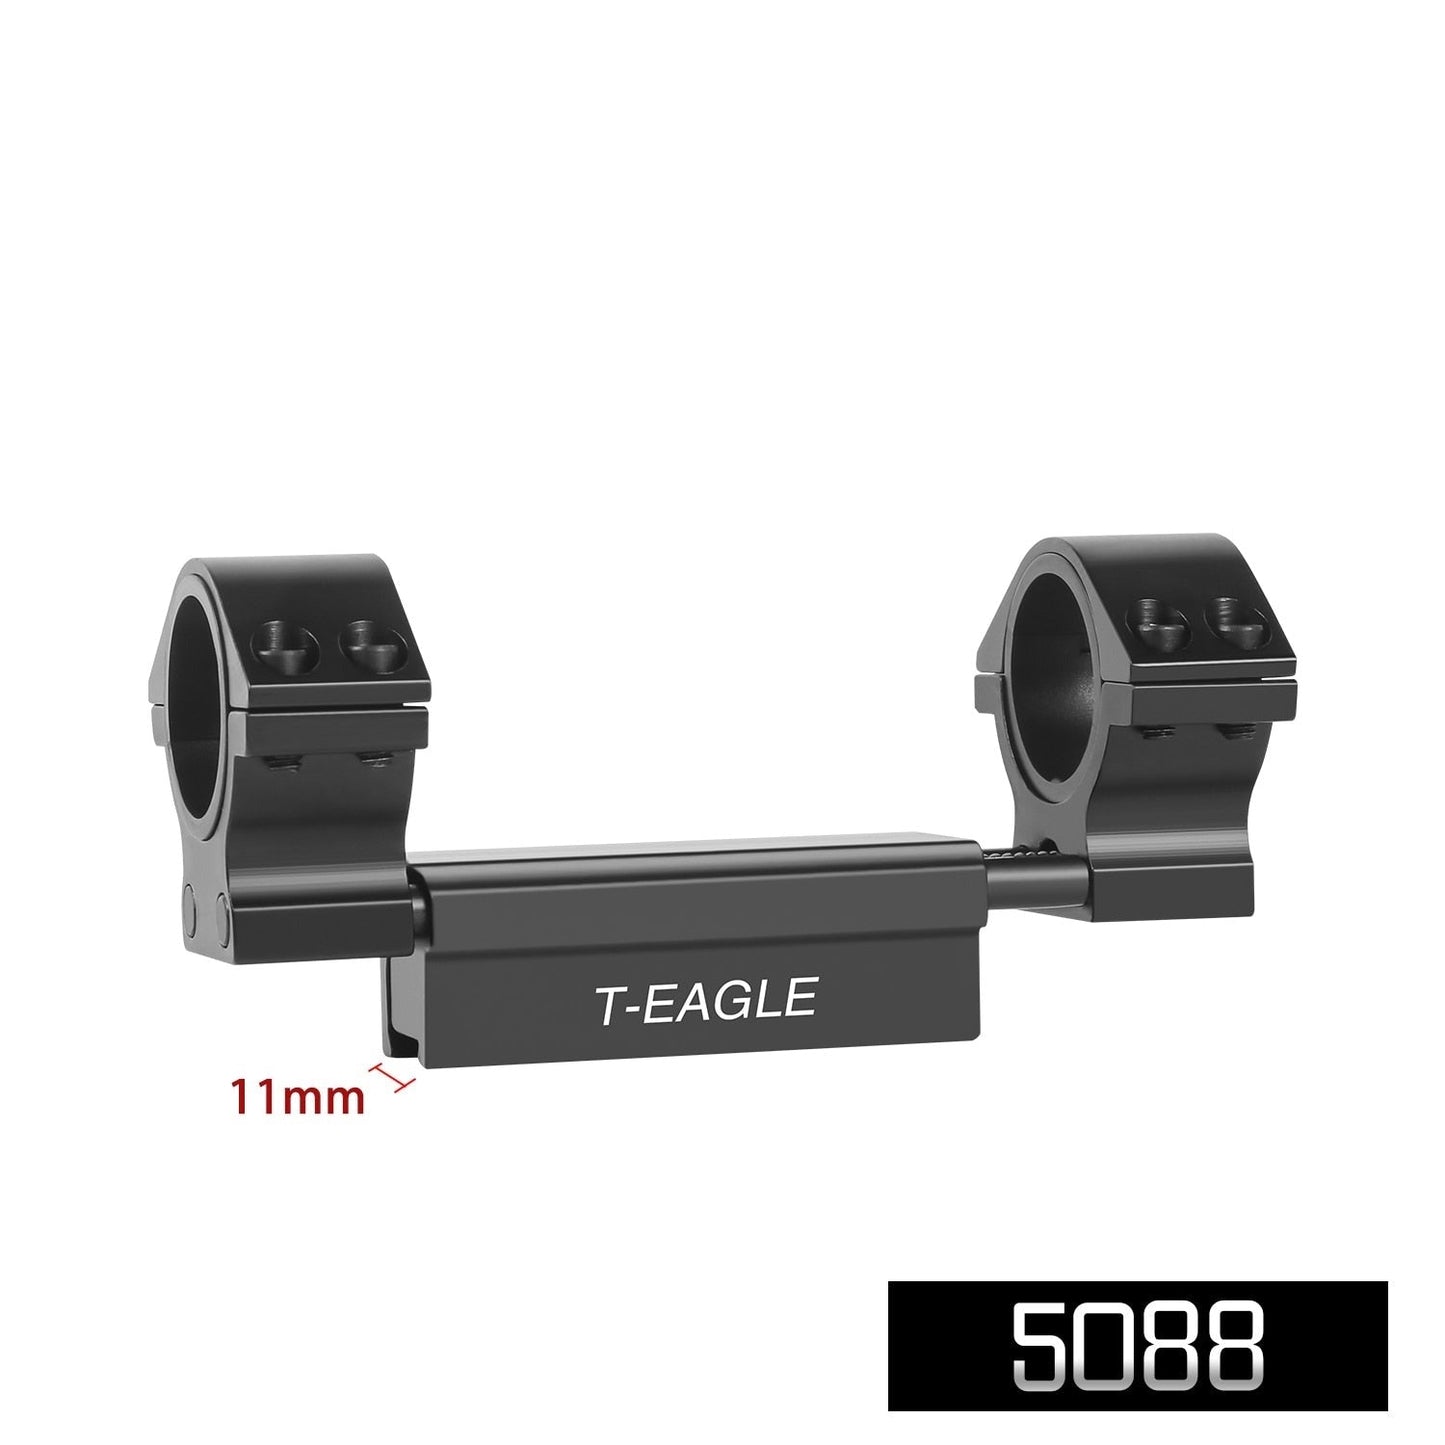 Montage lunette 1 "/25.4mm et 30mm Rail Weaver 11mm - ACTION AIRSOFT